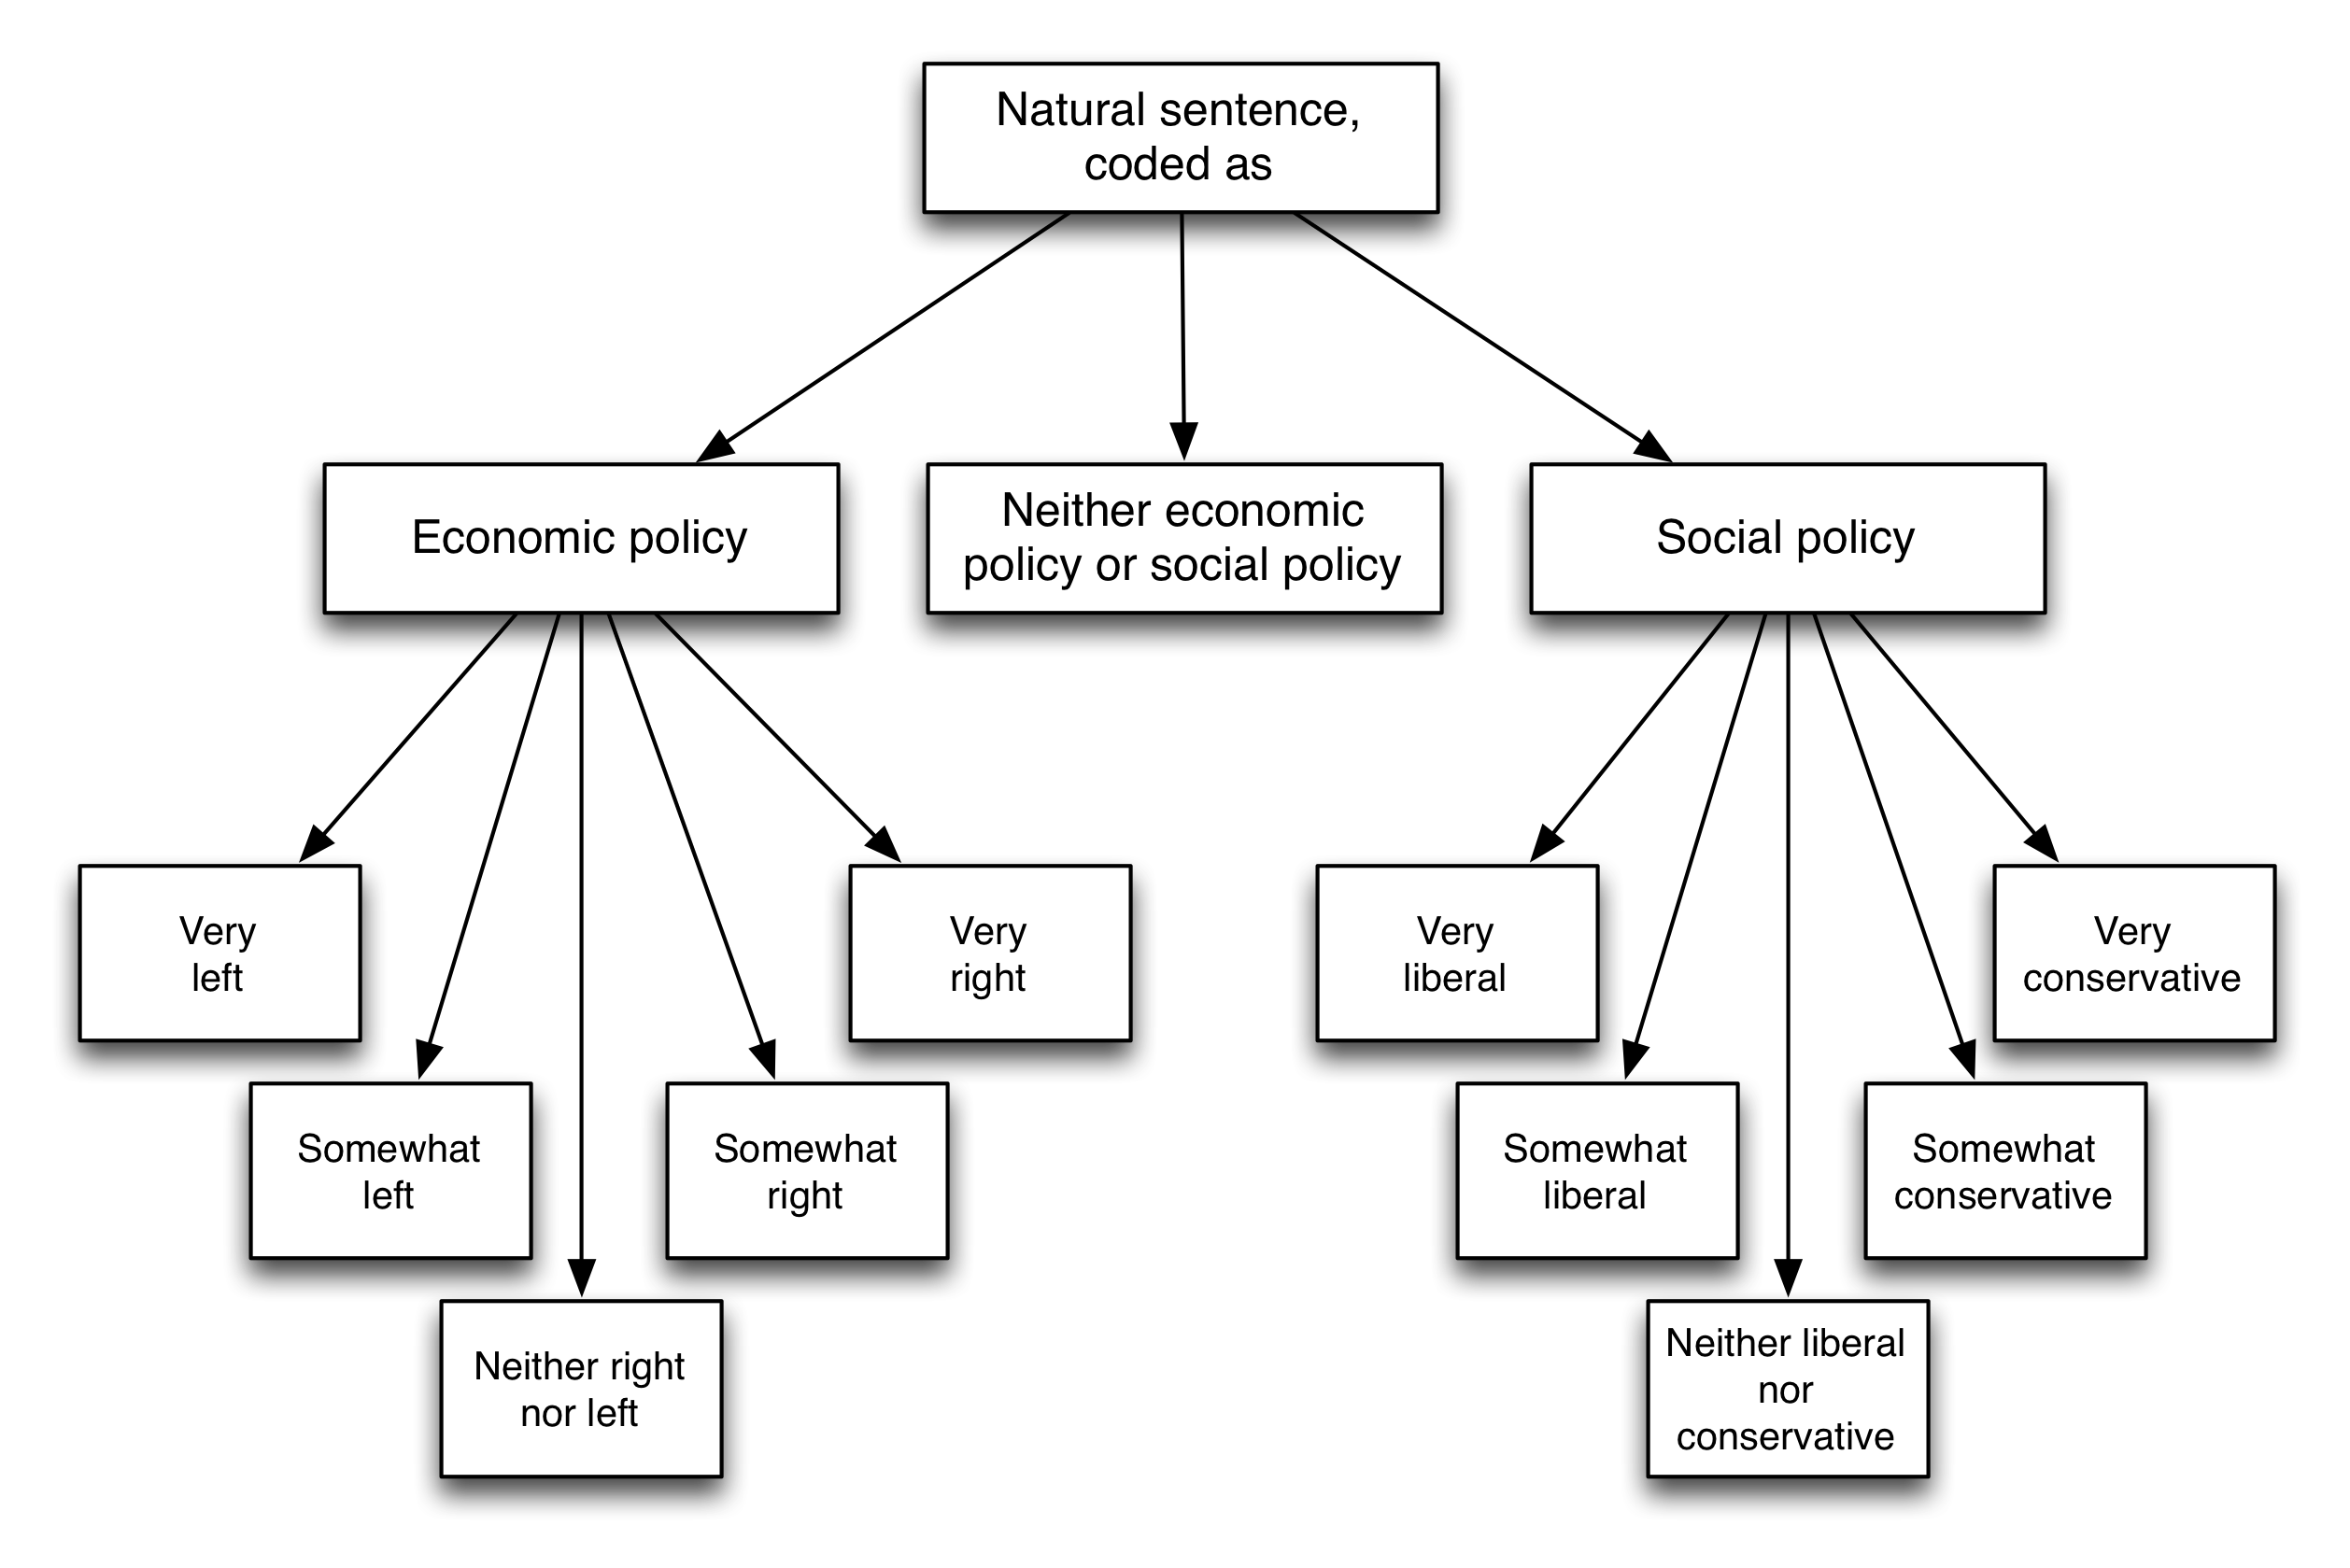 ფიგურა 5.5: კოდირების სქემა ბონოიტისა და ალ. (2016). მკითხველებმა მოითხოვეს თითოეული სასჯელის კლასიფიცირება ეკონომიკურ პოლიტიკასთან (მარცხნივ ან მარჯვნივ), სოციალური პოლიტიკის (ლიბერალური ან კონსერვატიული), ან არც. ადაპტირებული ბენოიტისა და ალ. (2016), ფიგურა 1.